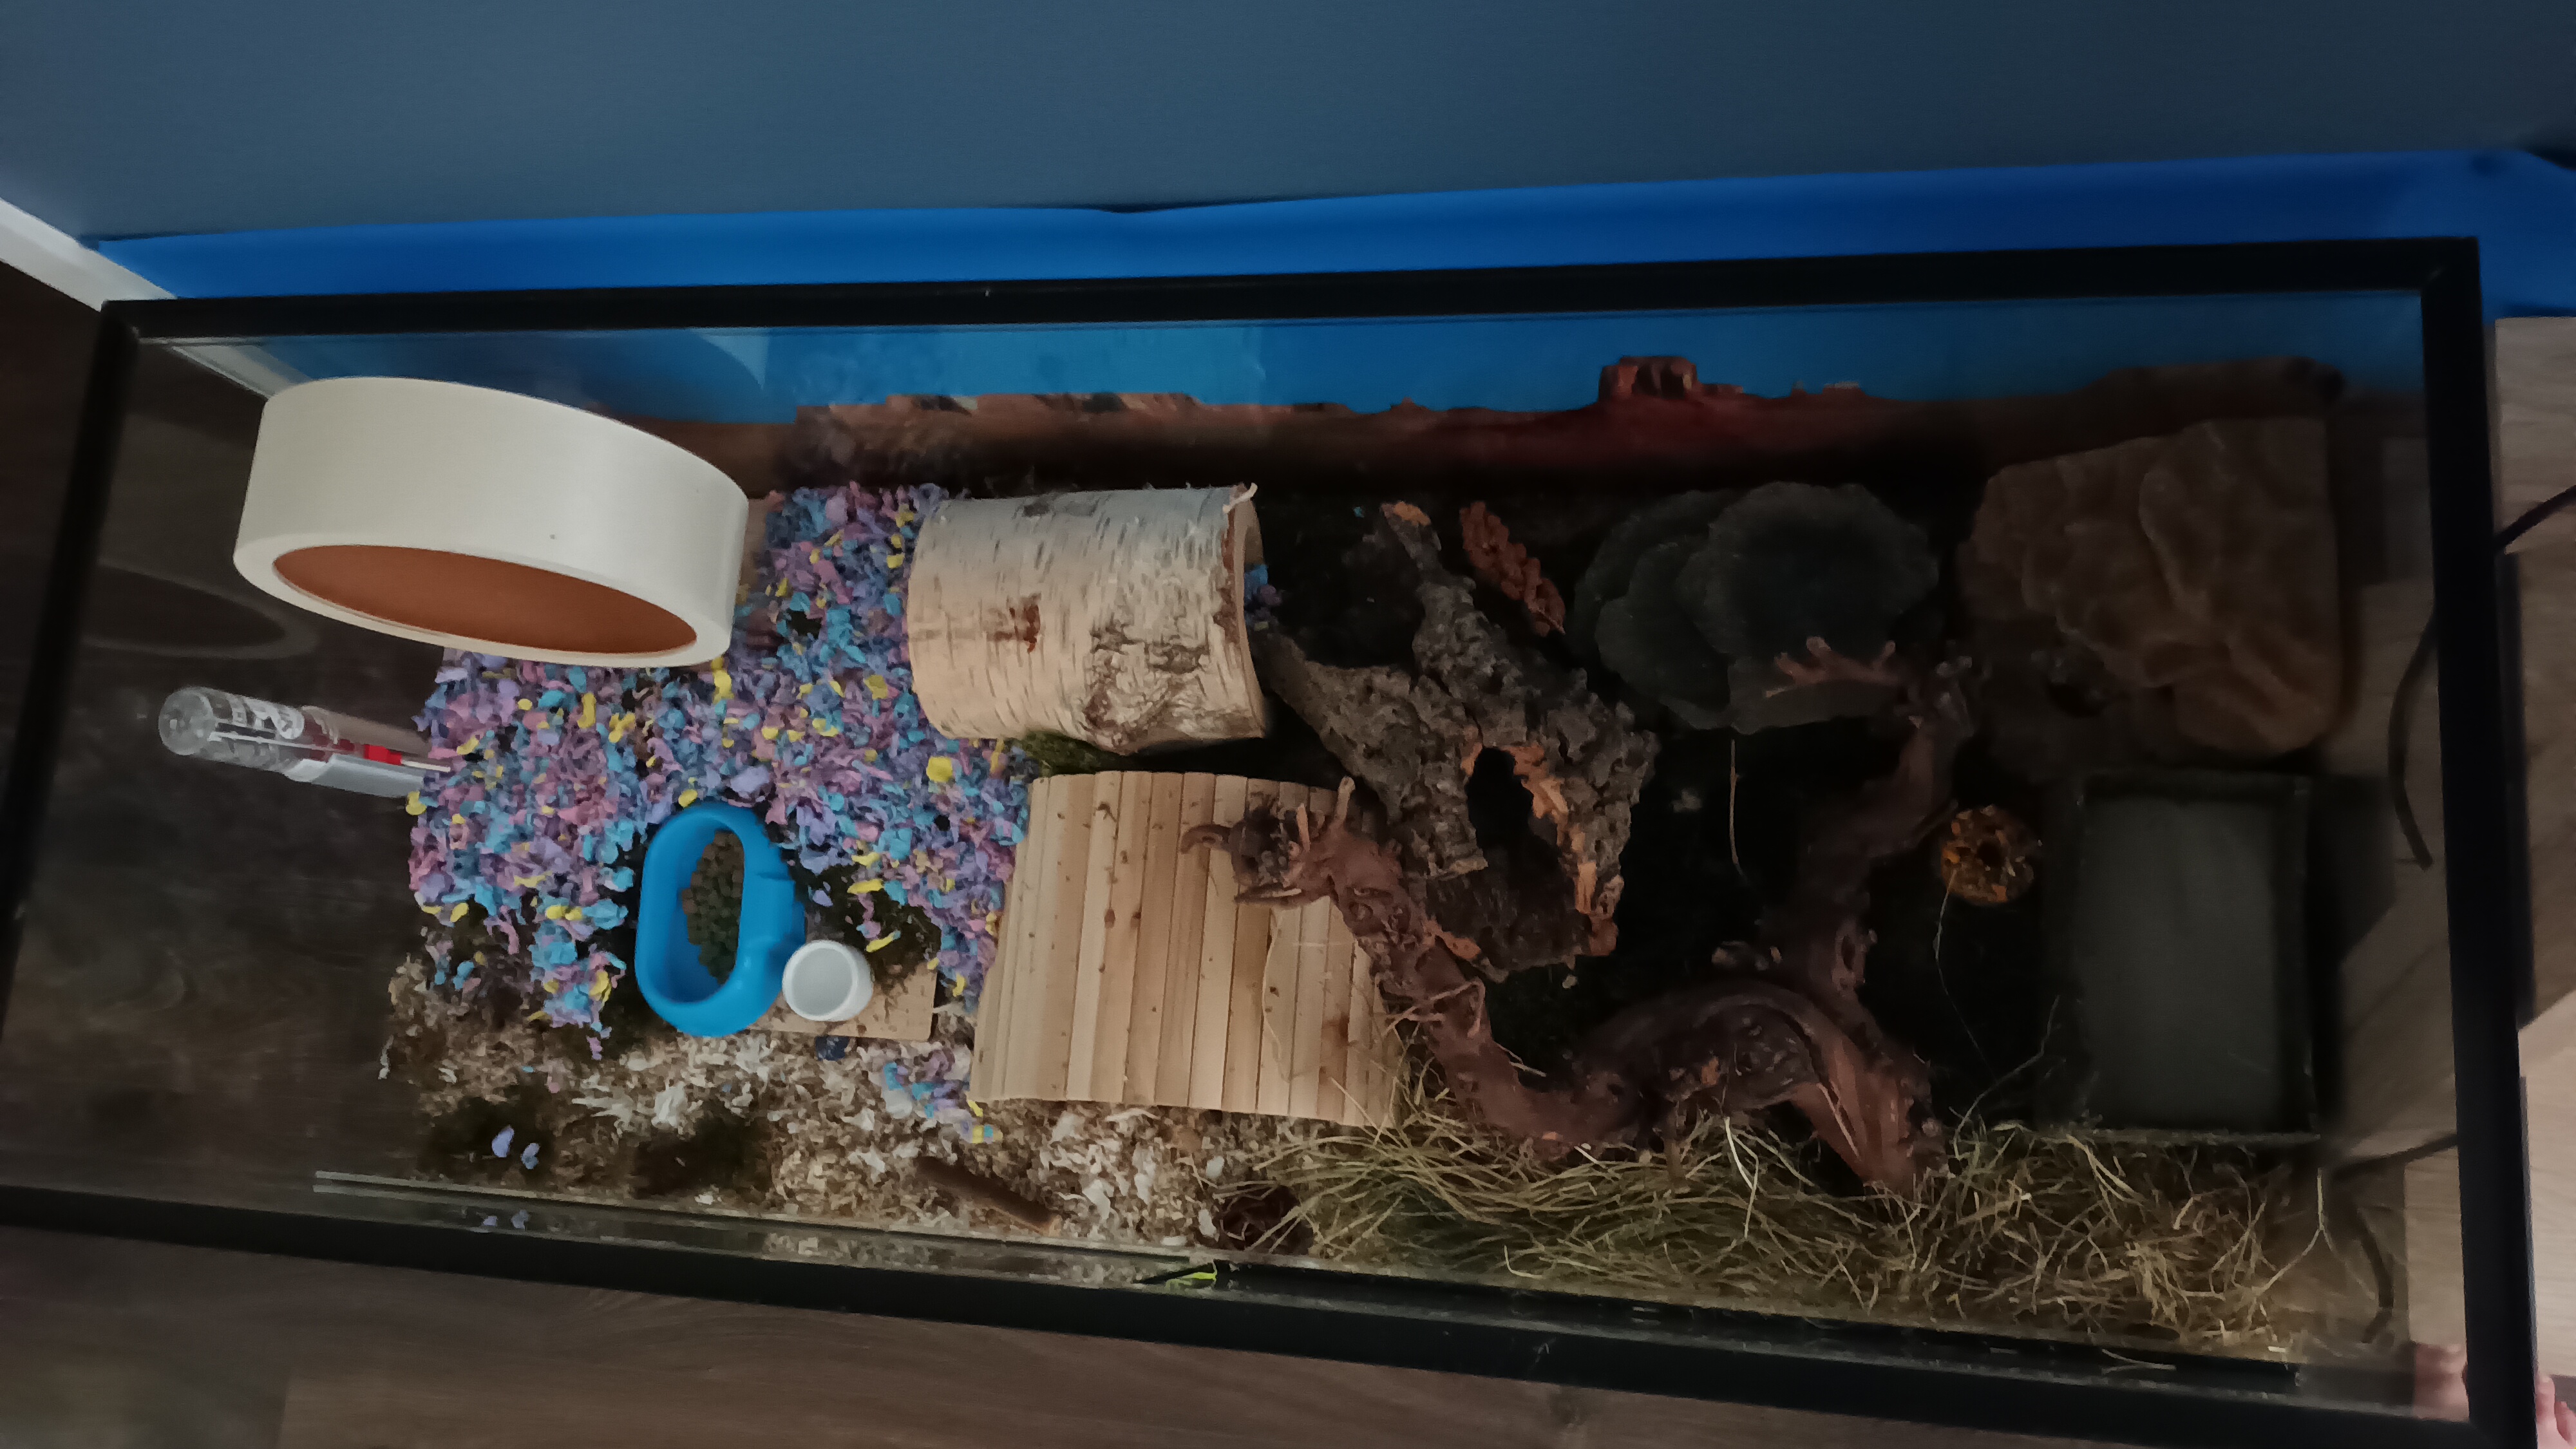 120x50x60 Hamster Terrarium met schuifruiten zonder plateaus